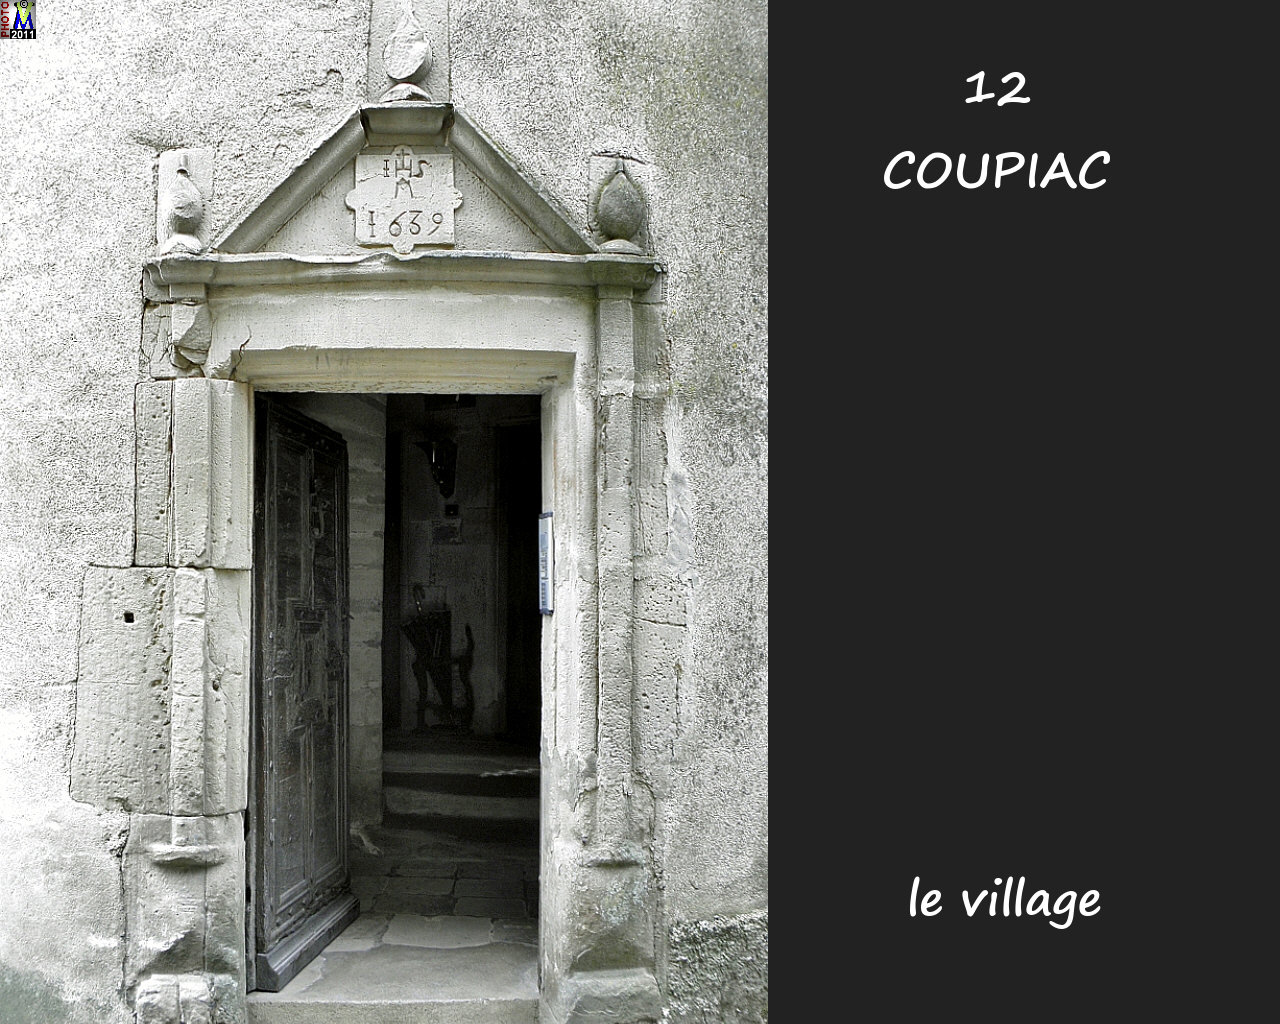 12COUPIAC_village_112.jpg